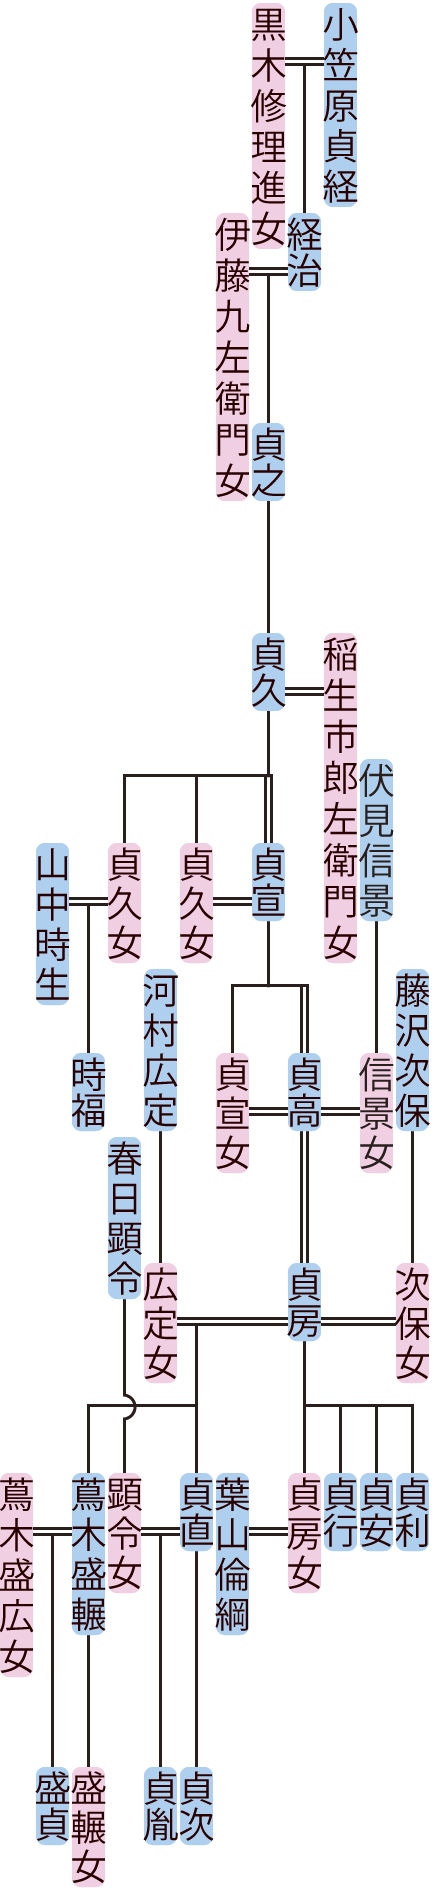 小笠原貞之～貞直の系図